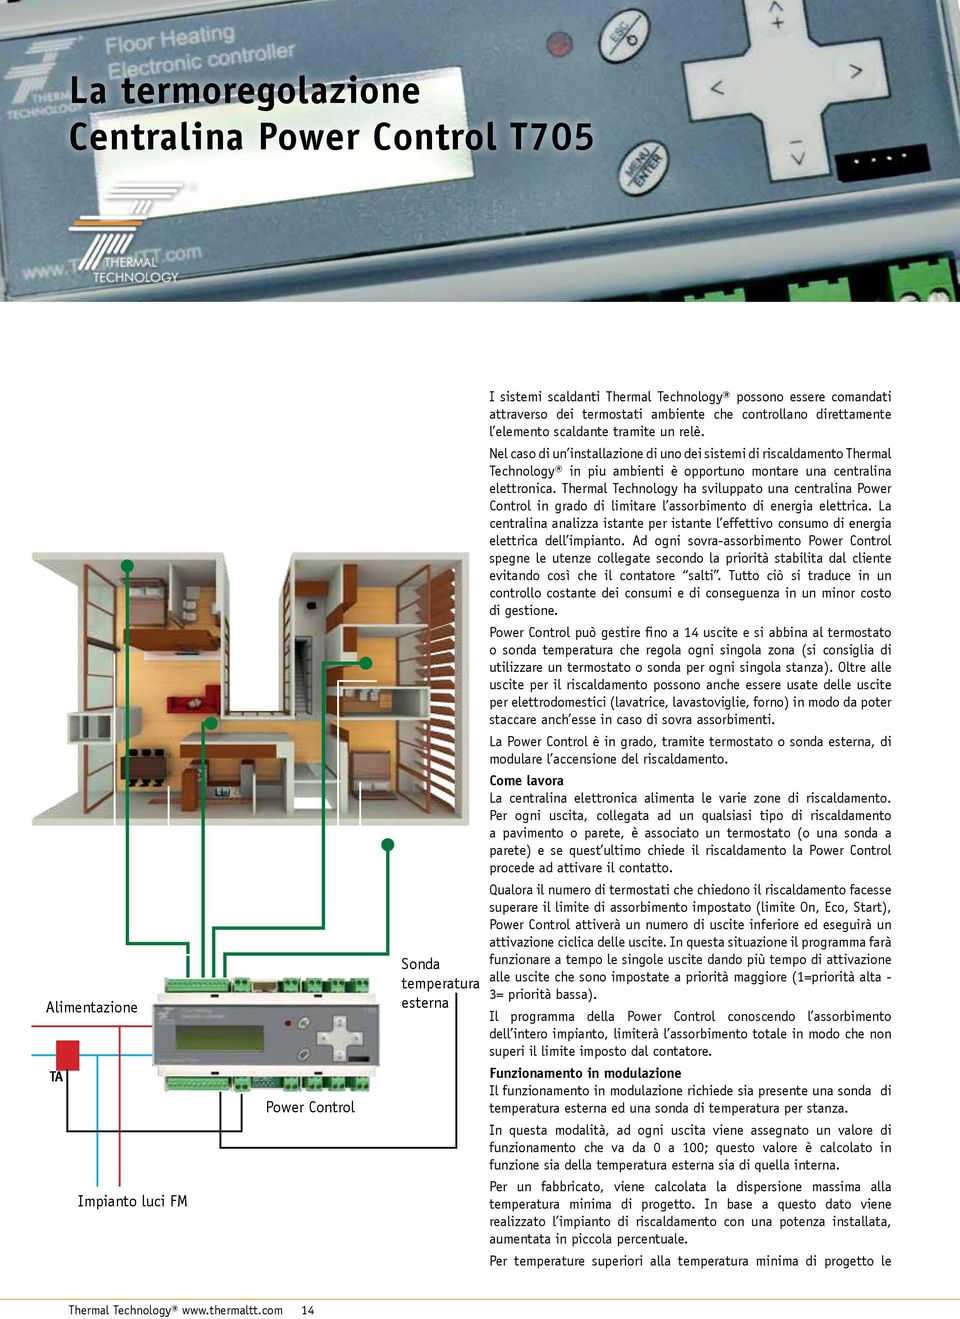 Nel caso di un installazione di uno dei sistemi di riscaldamento Thermal Technology in piu ambienti è opportuno montare una centralina elettronica.